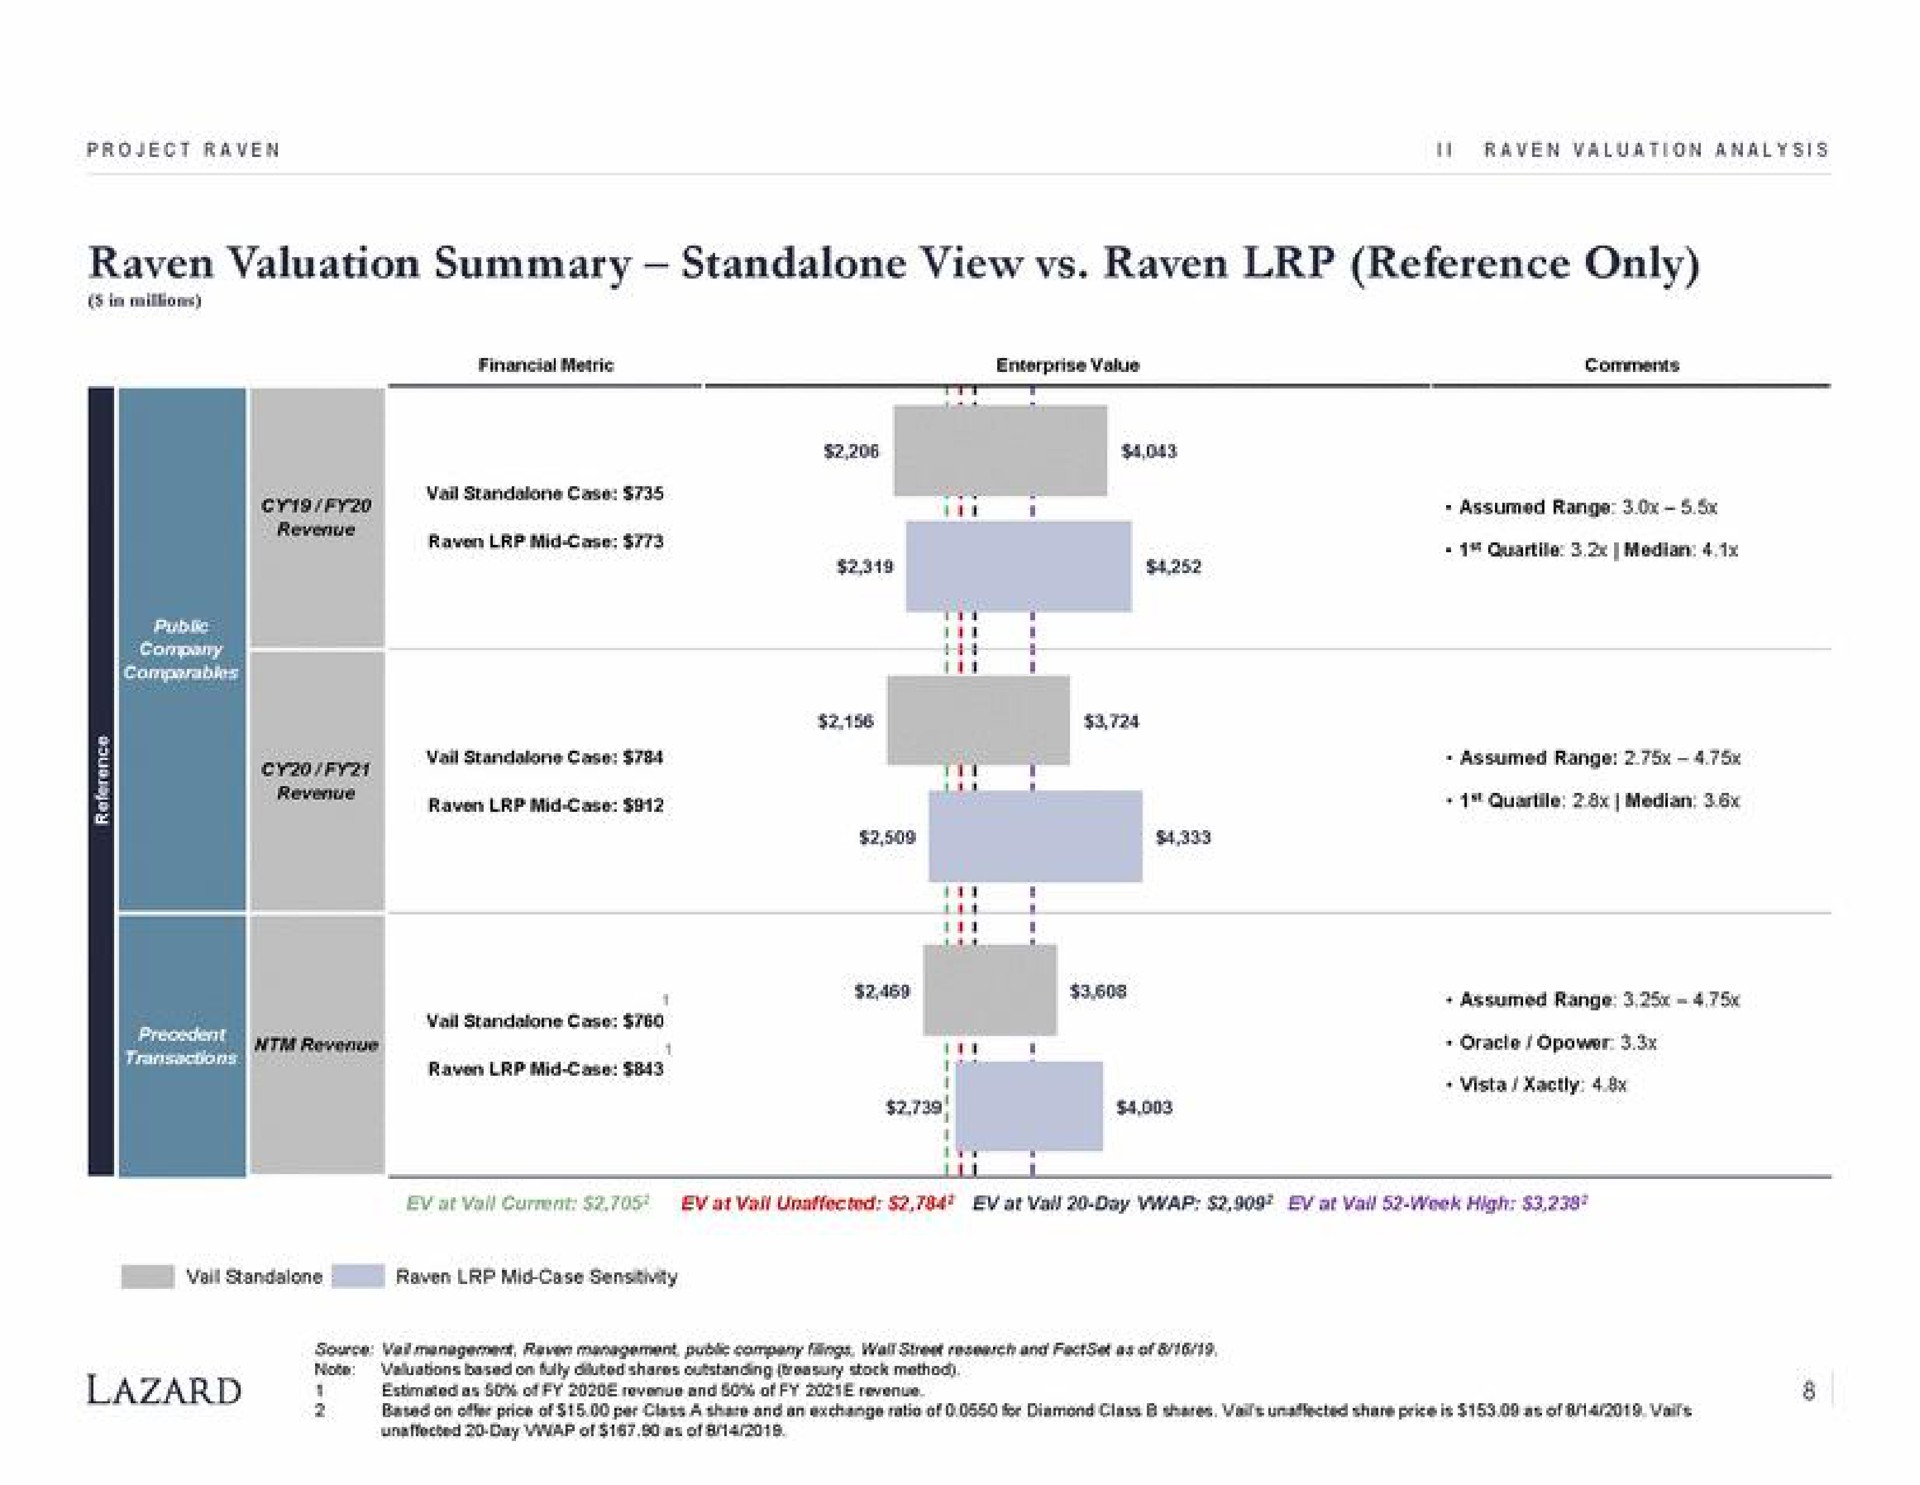 raven valuation summary view raven reference only raven mid case i quartile median assumed range vista | Lazard